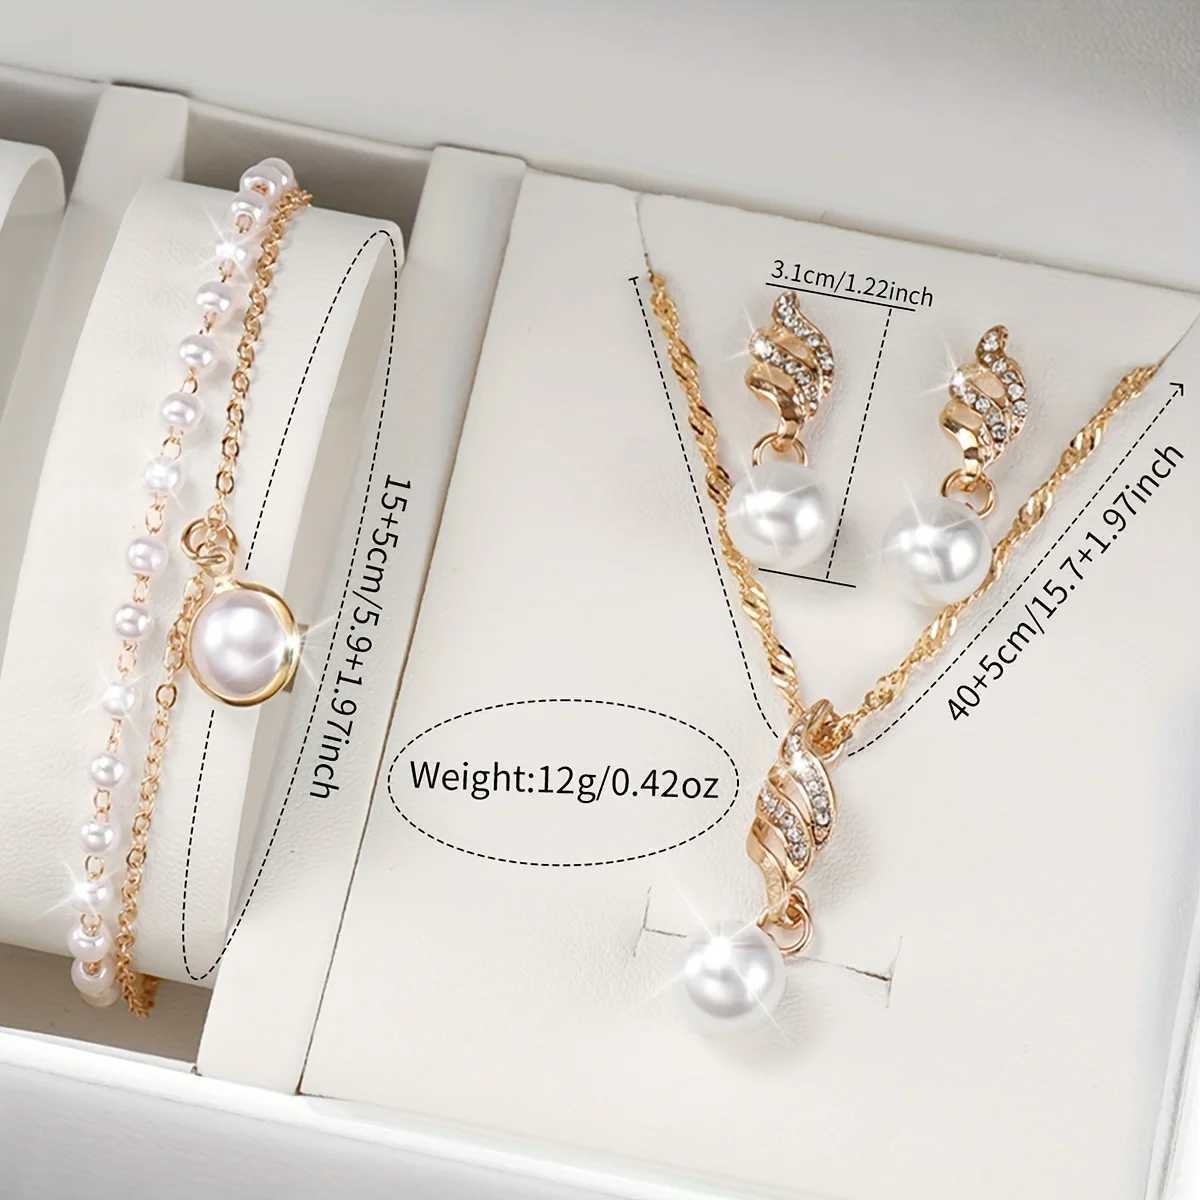 Frauen Uhren Frauen glänzender Strassquarz analog Pu Leder Handgelenk Faux Pearl Jewelry Set Gift für Mutter ihr